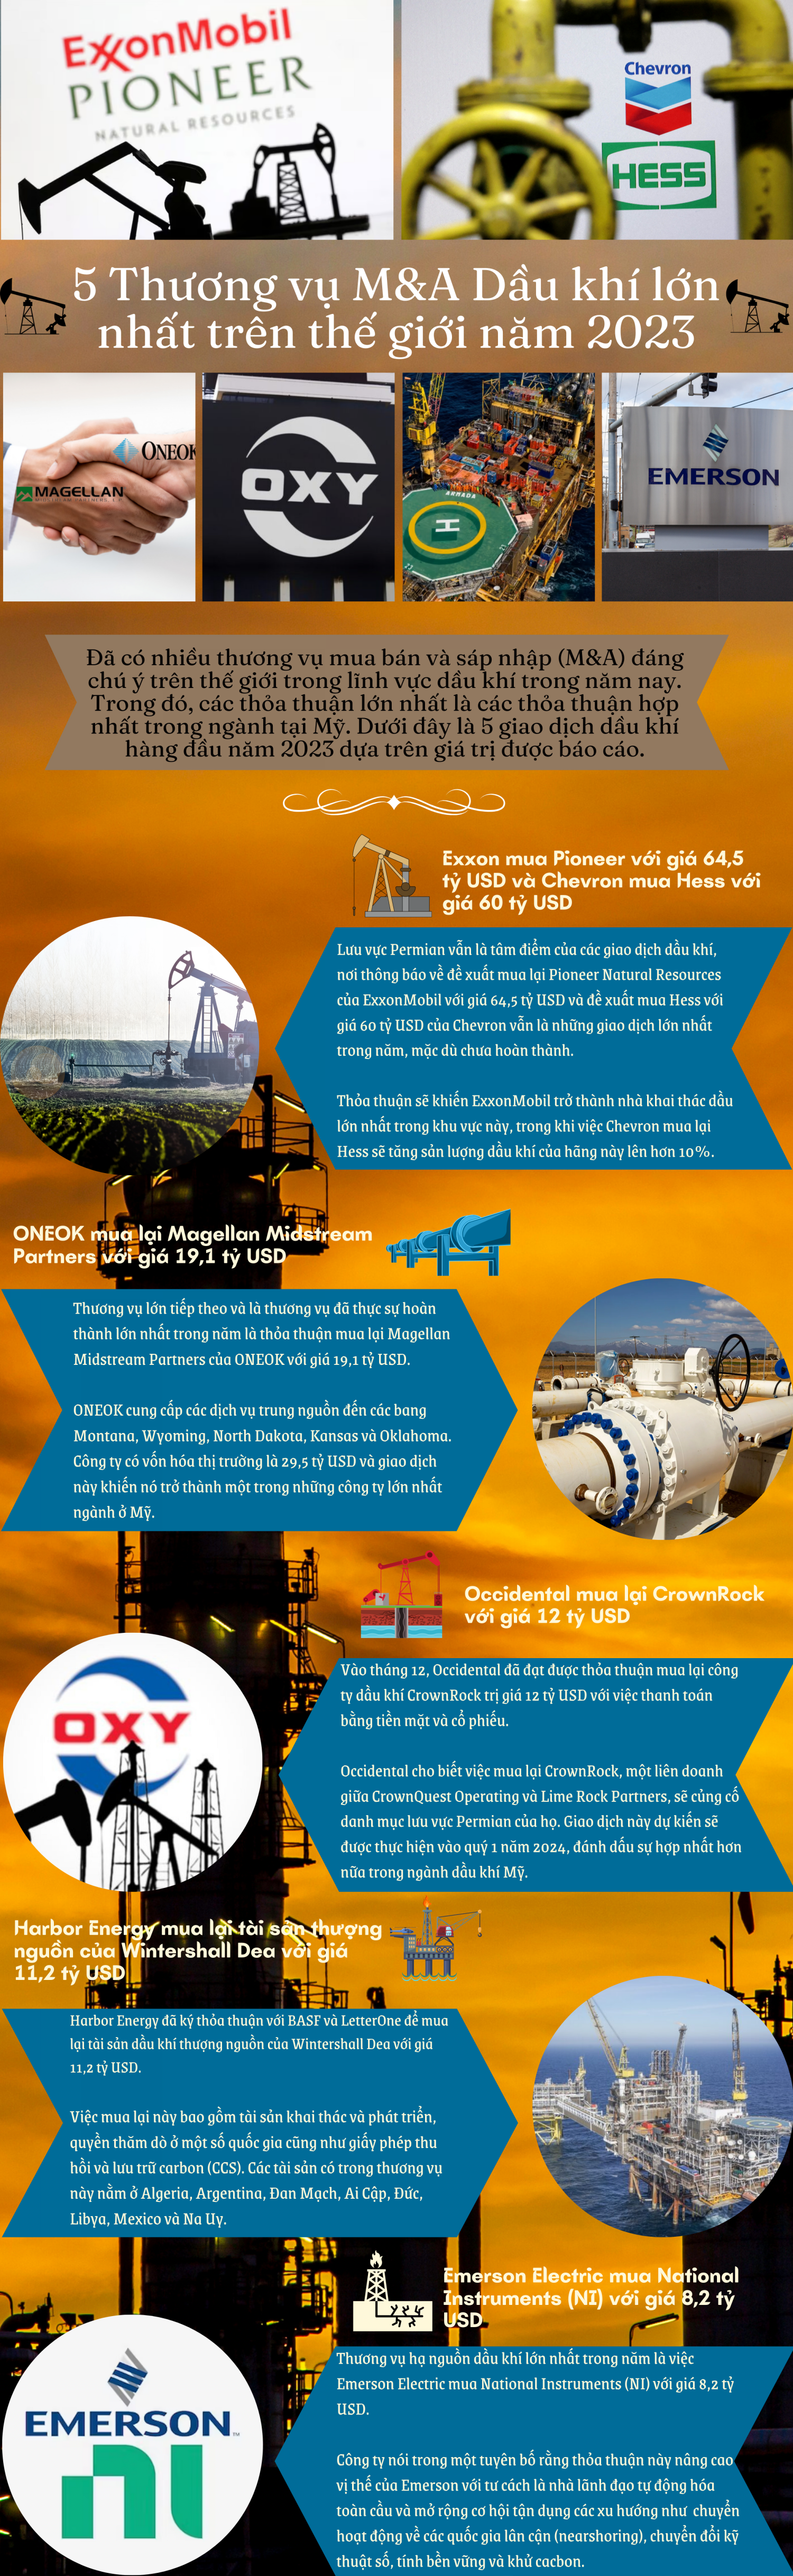 [Infographic] 5 Thương vụ M&A dầu khí lớn nhất trên thế giới năm 2023